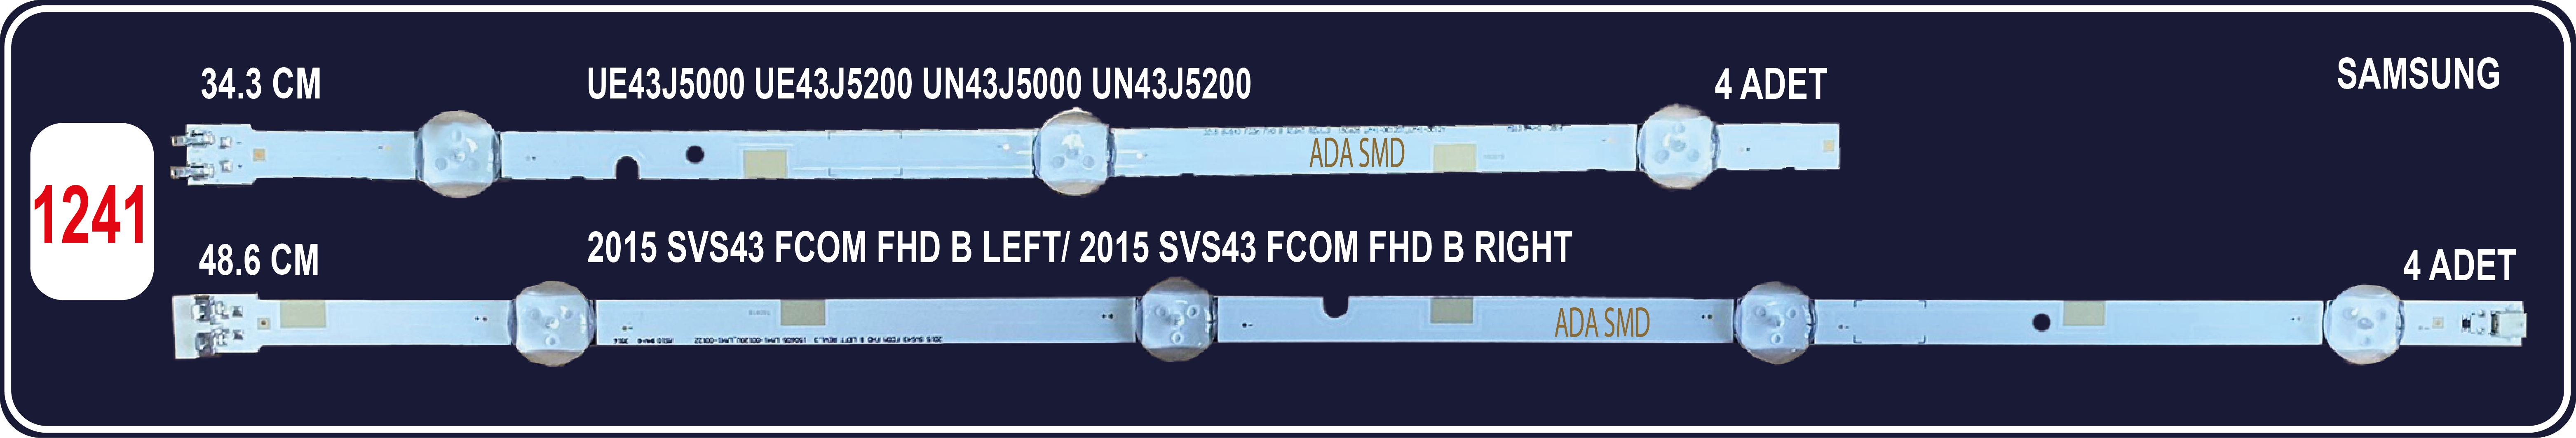 SAMSUNG UE43J5000 - UE43J5200 - UN43J5000 - UN43J5200 - UE43J5300 - UA43J5100